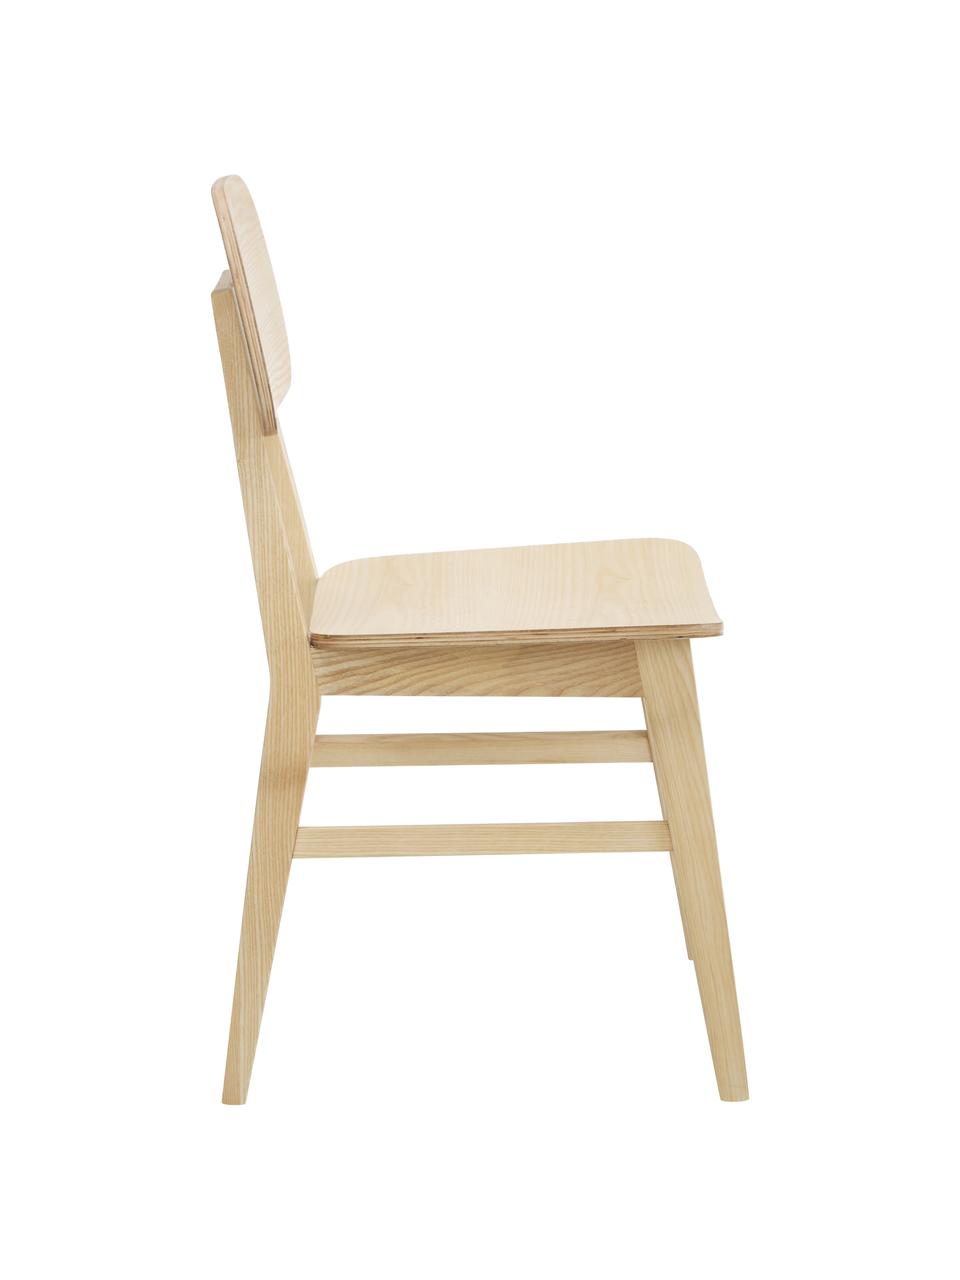 Chaise en bois marron Akina, 2 pièces, Brun, larg. 45 x haut. 86 cm